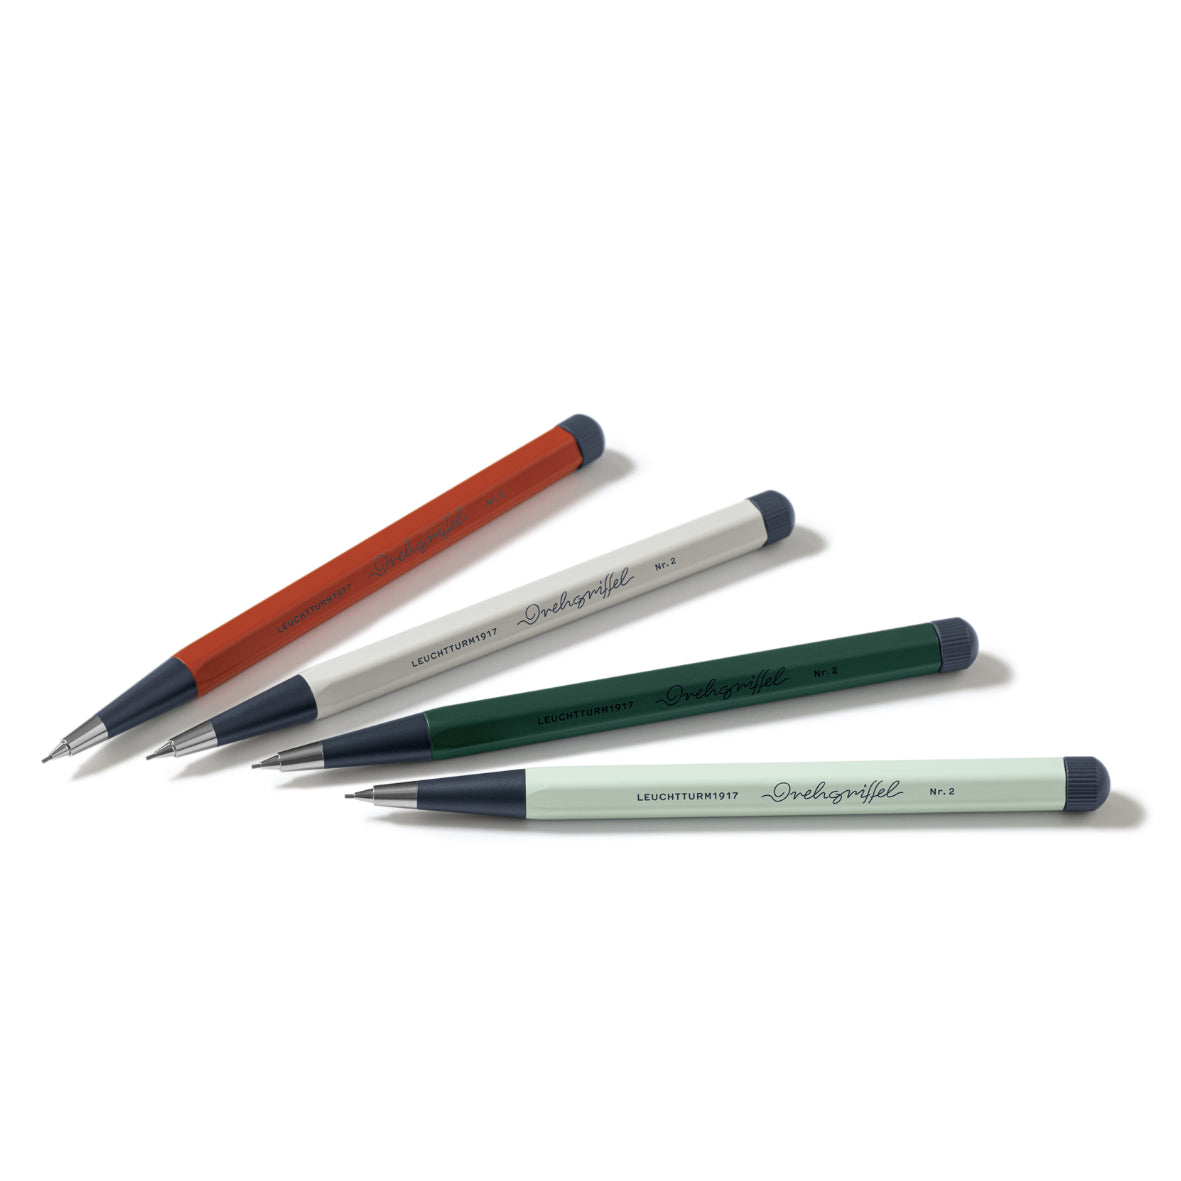 Drehgriffel Nr. 2, Natural colours  Mechanical Pencil